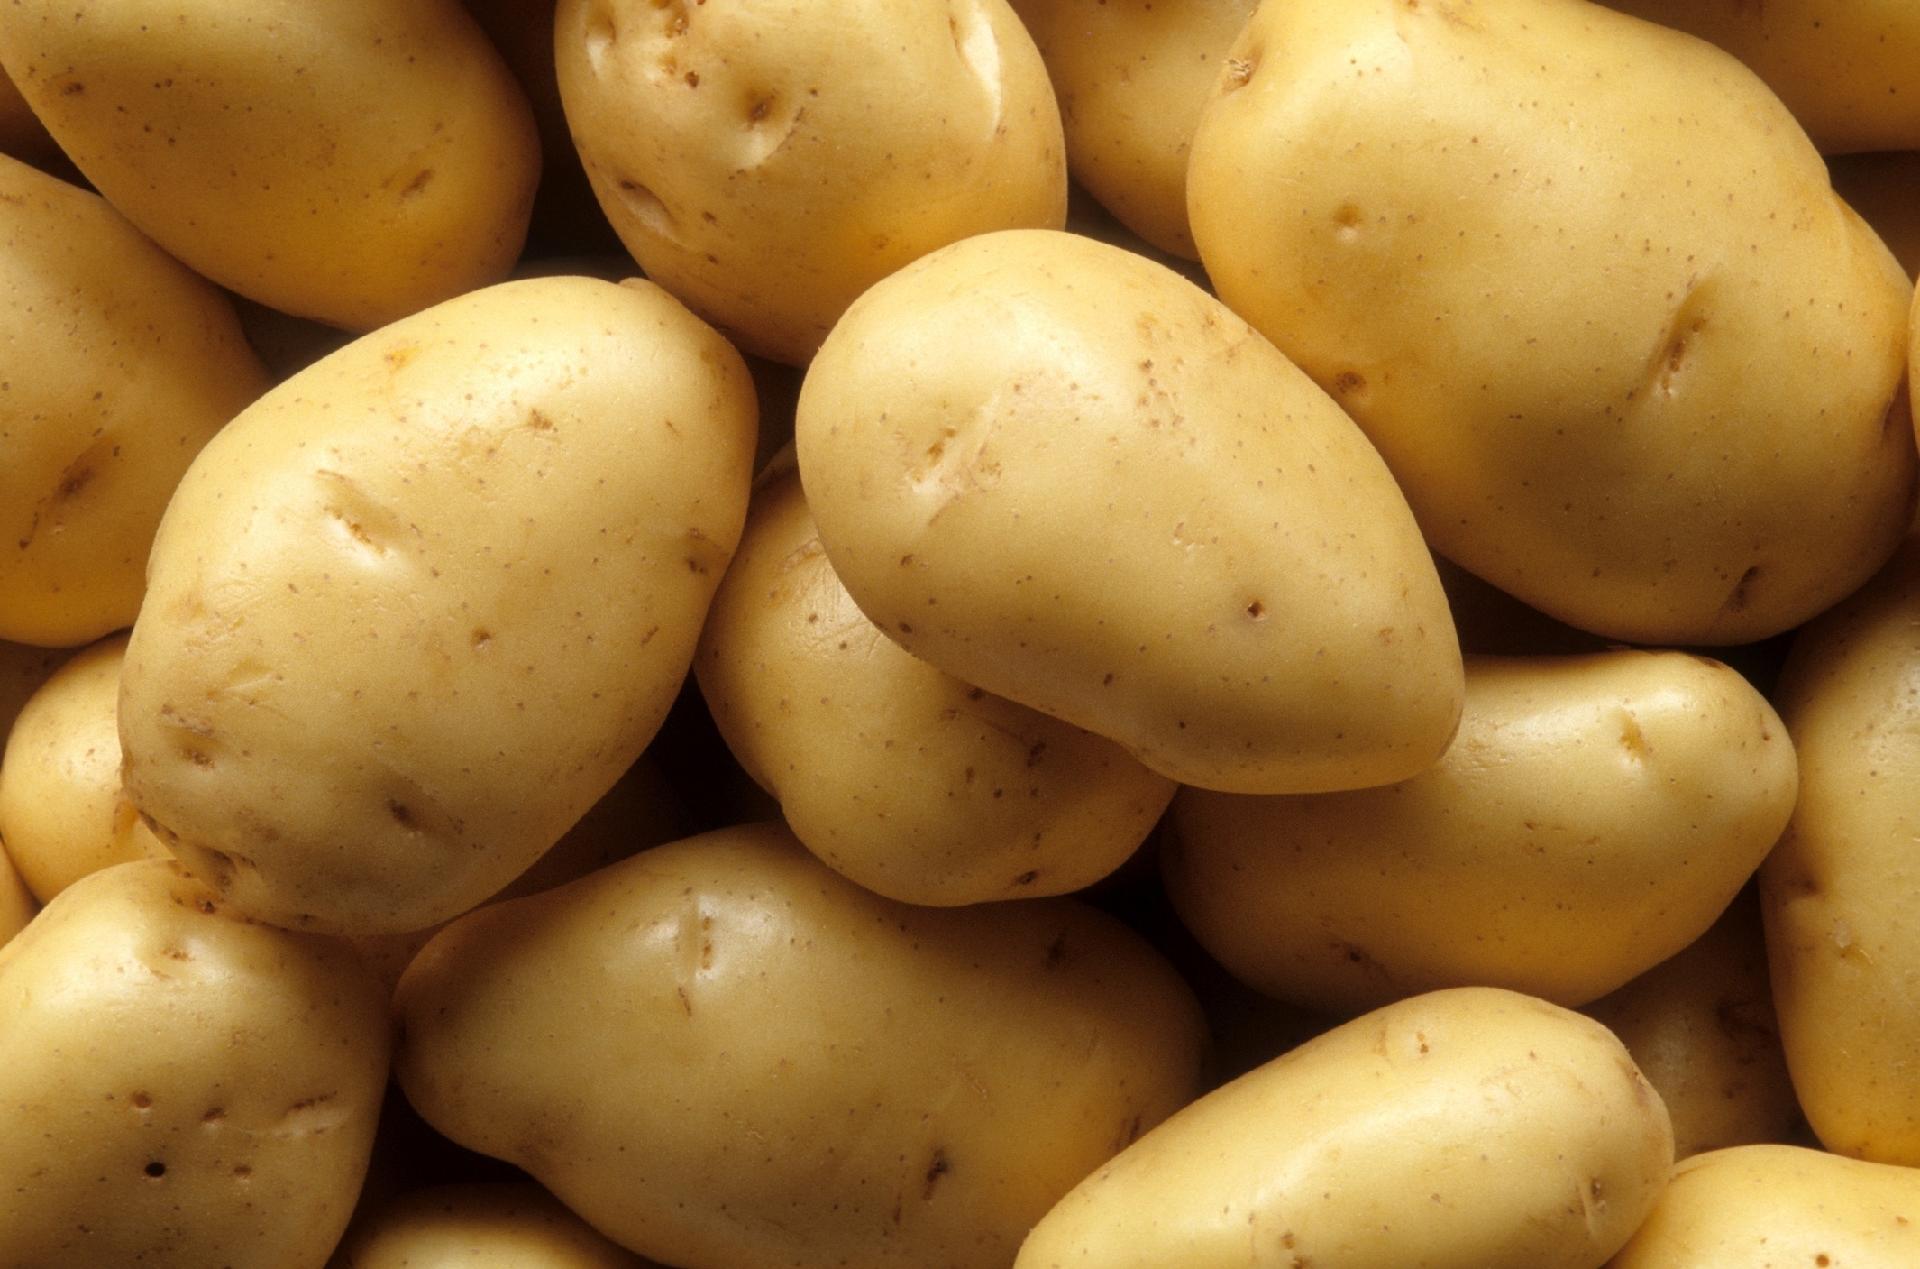 Batatas podem absorver sinal de Wi-Fi 